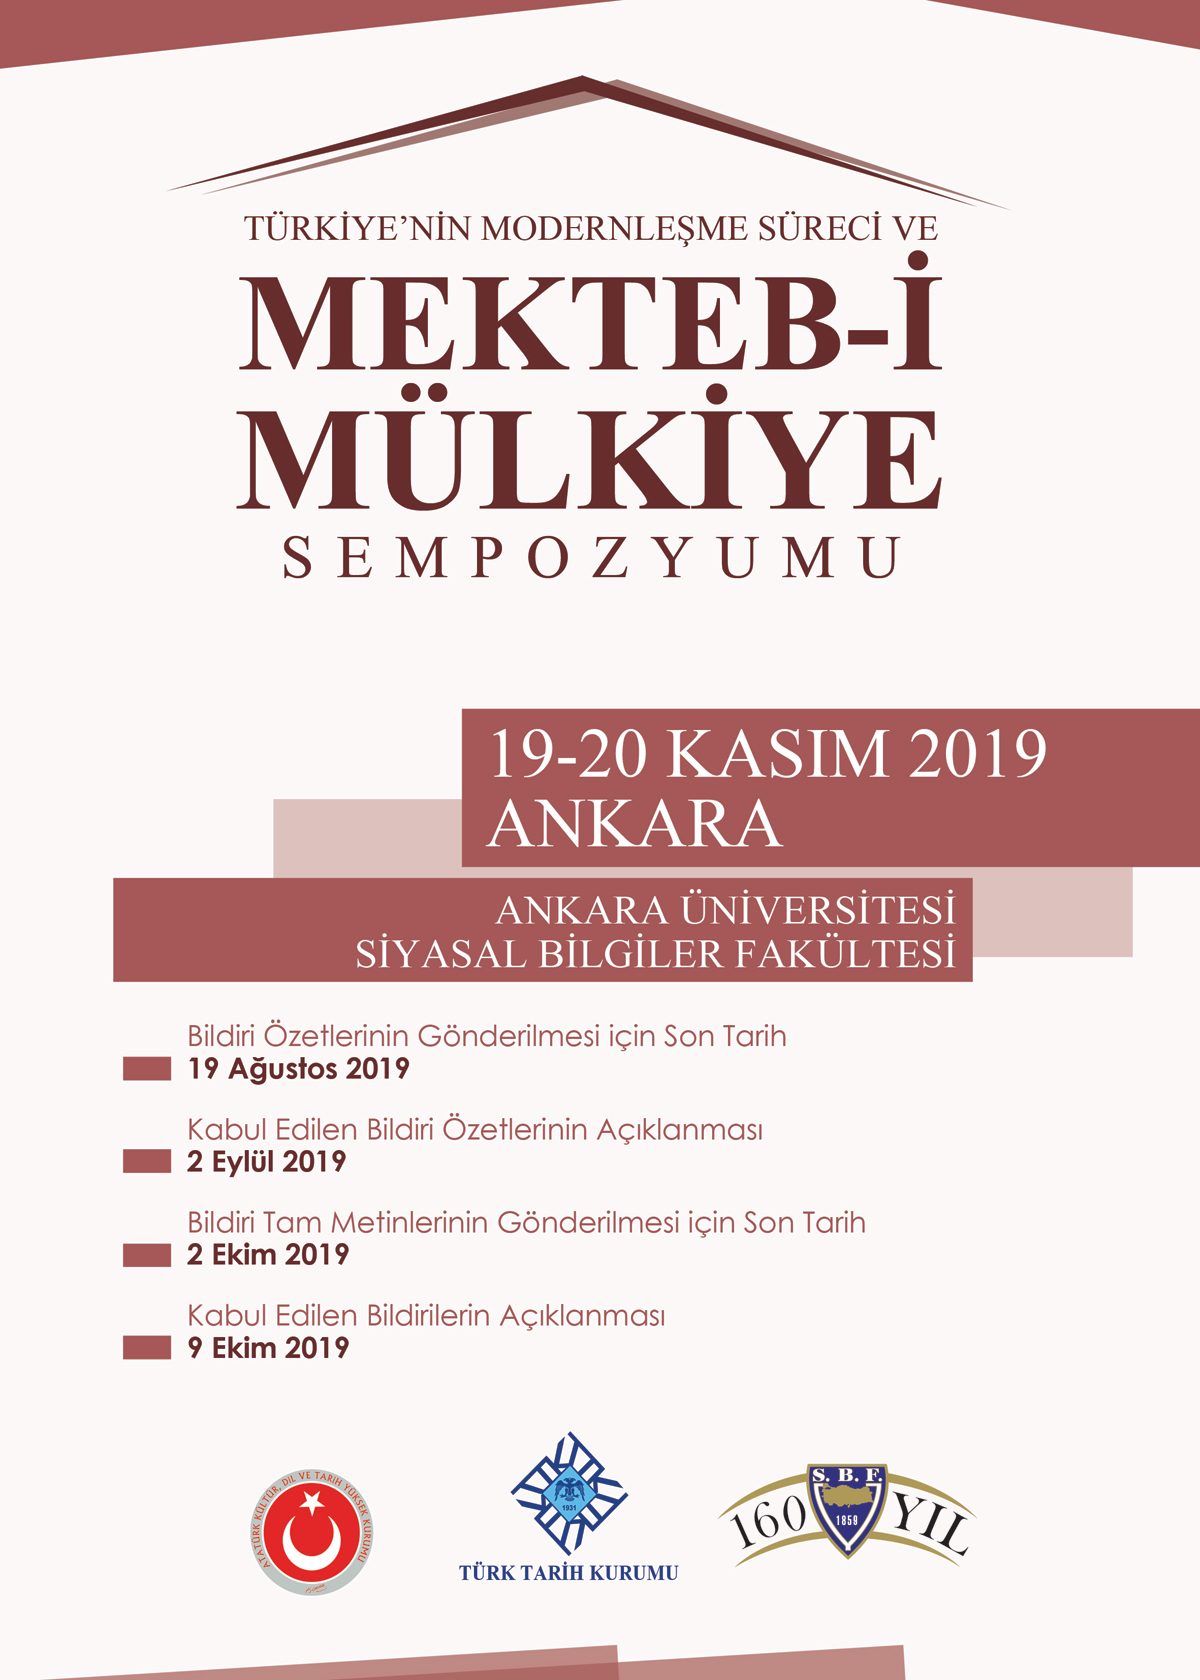 Türkiye’nin Modernleşme Süreci ve Mekteb-i Mülkiye Sempozyumu, 19-20 Kasım 2019 [Önemli Tarihler (Güncellendi)]